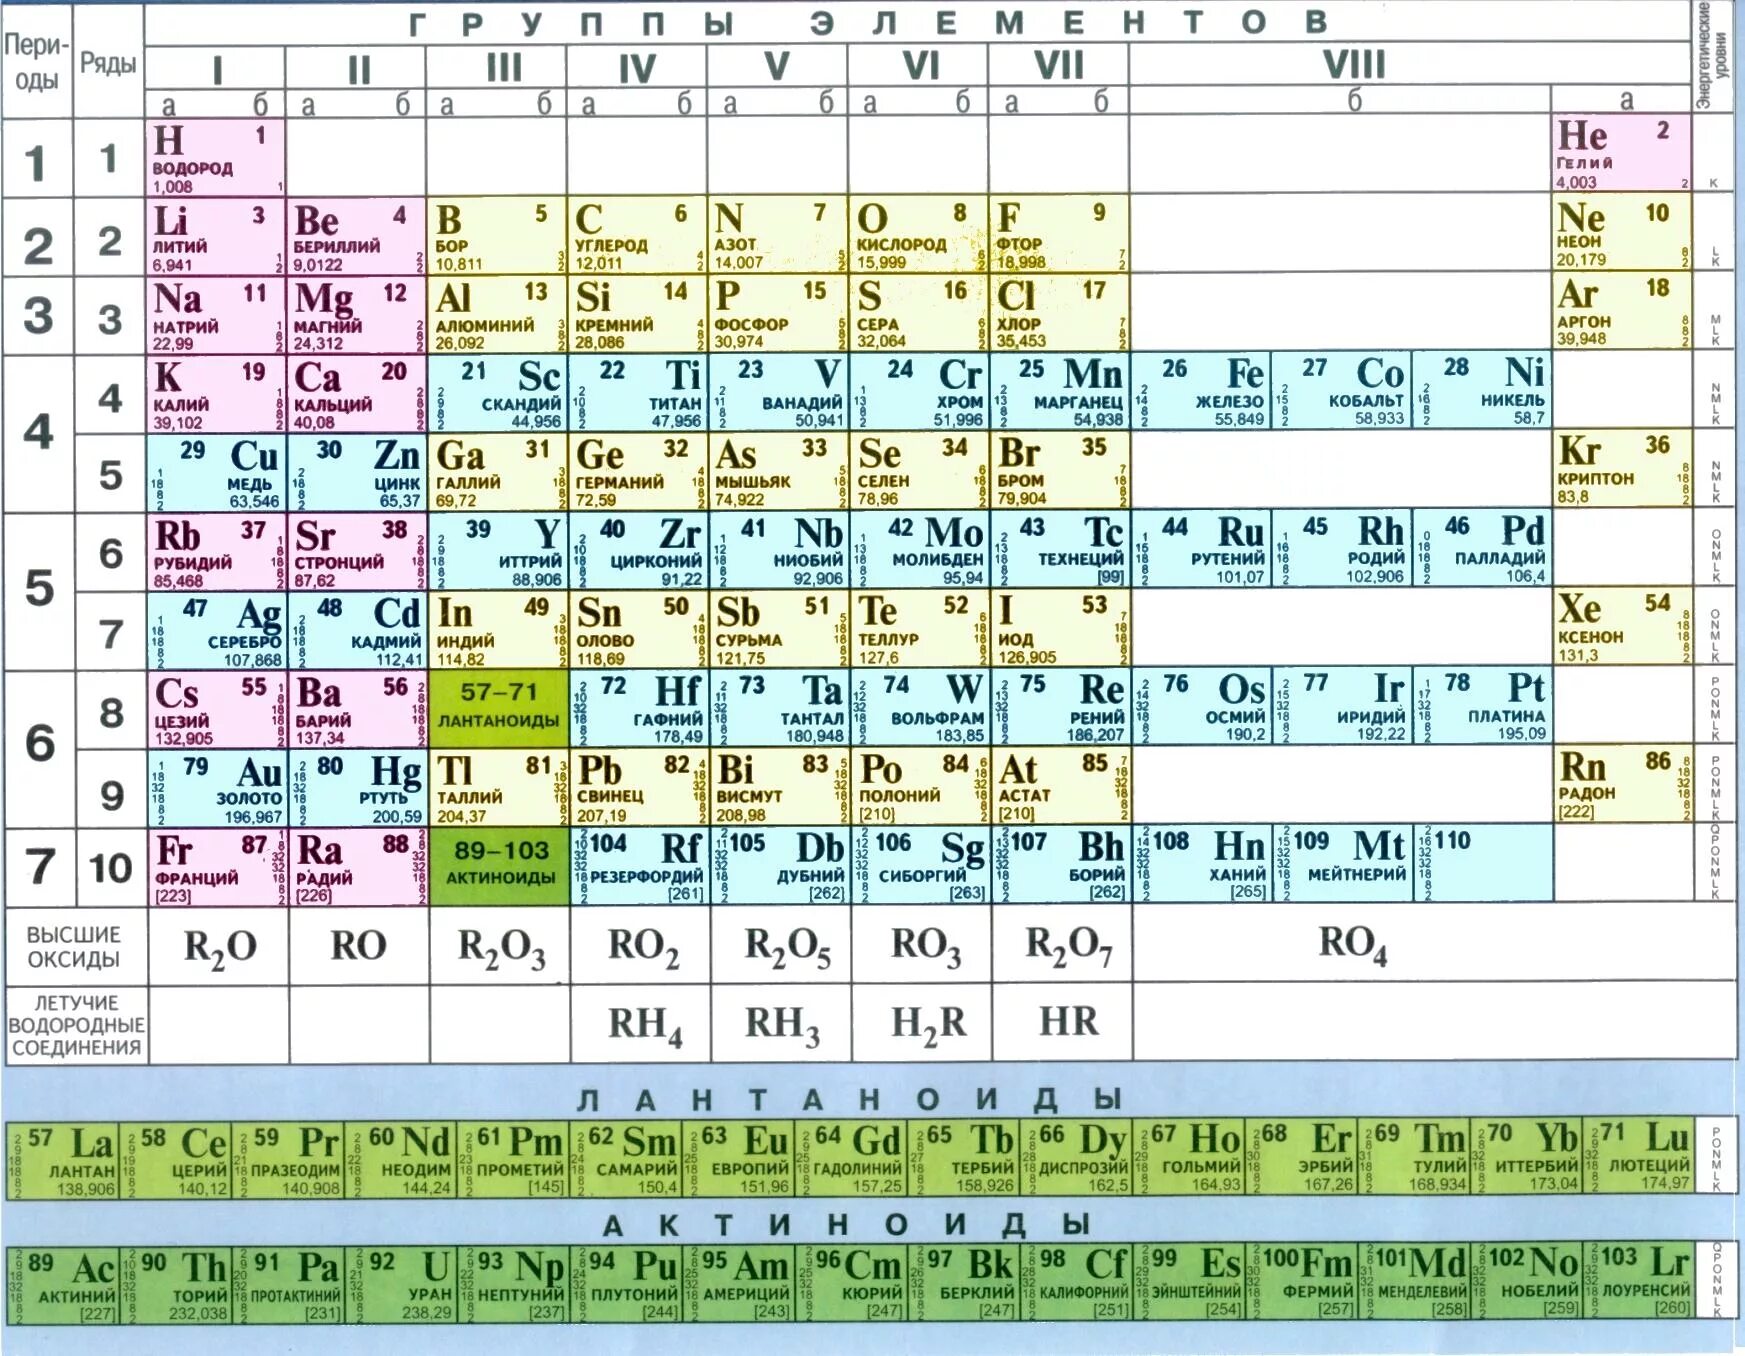 Летучее соединение лития. Короткопериодная таблица Менделеева. Химия 8 кл таблица Менделеева. Металлы в таблице Менделеева по химии 8 класс.